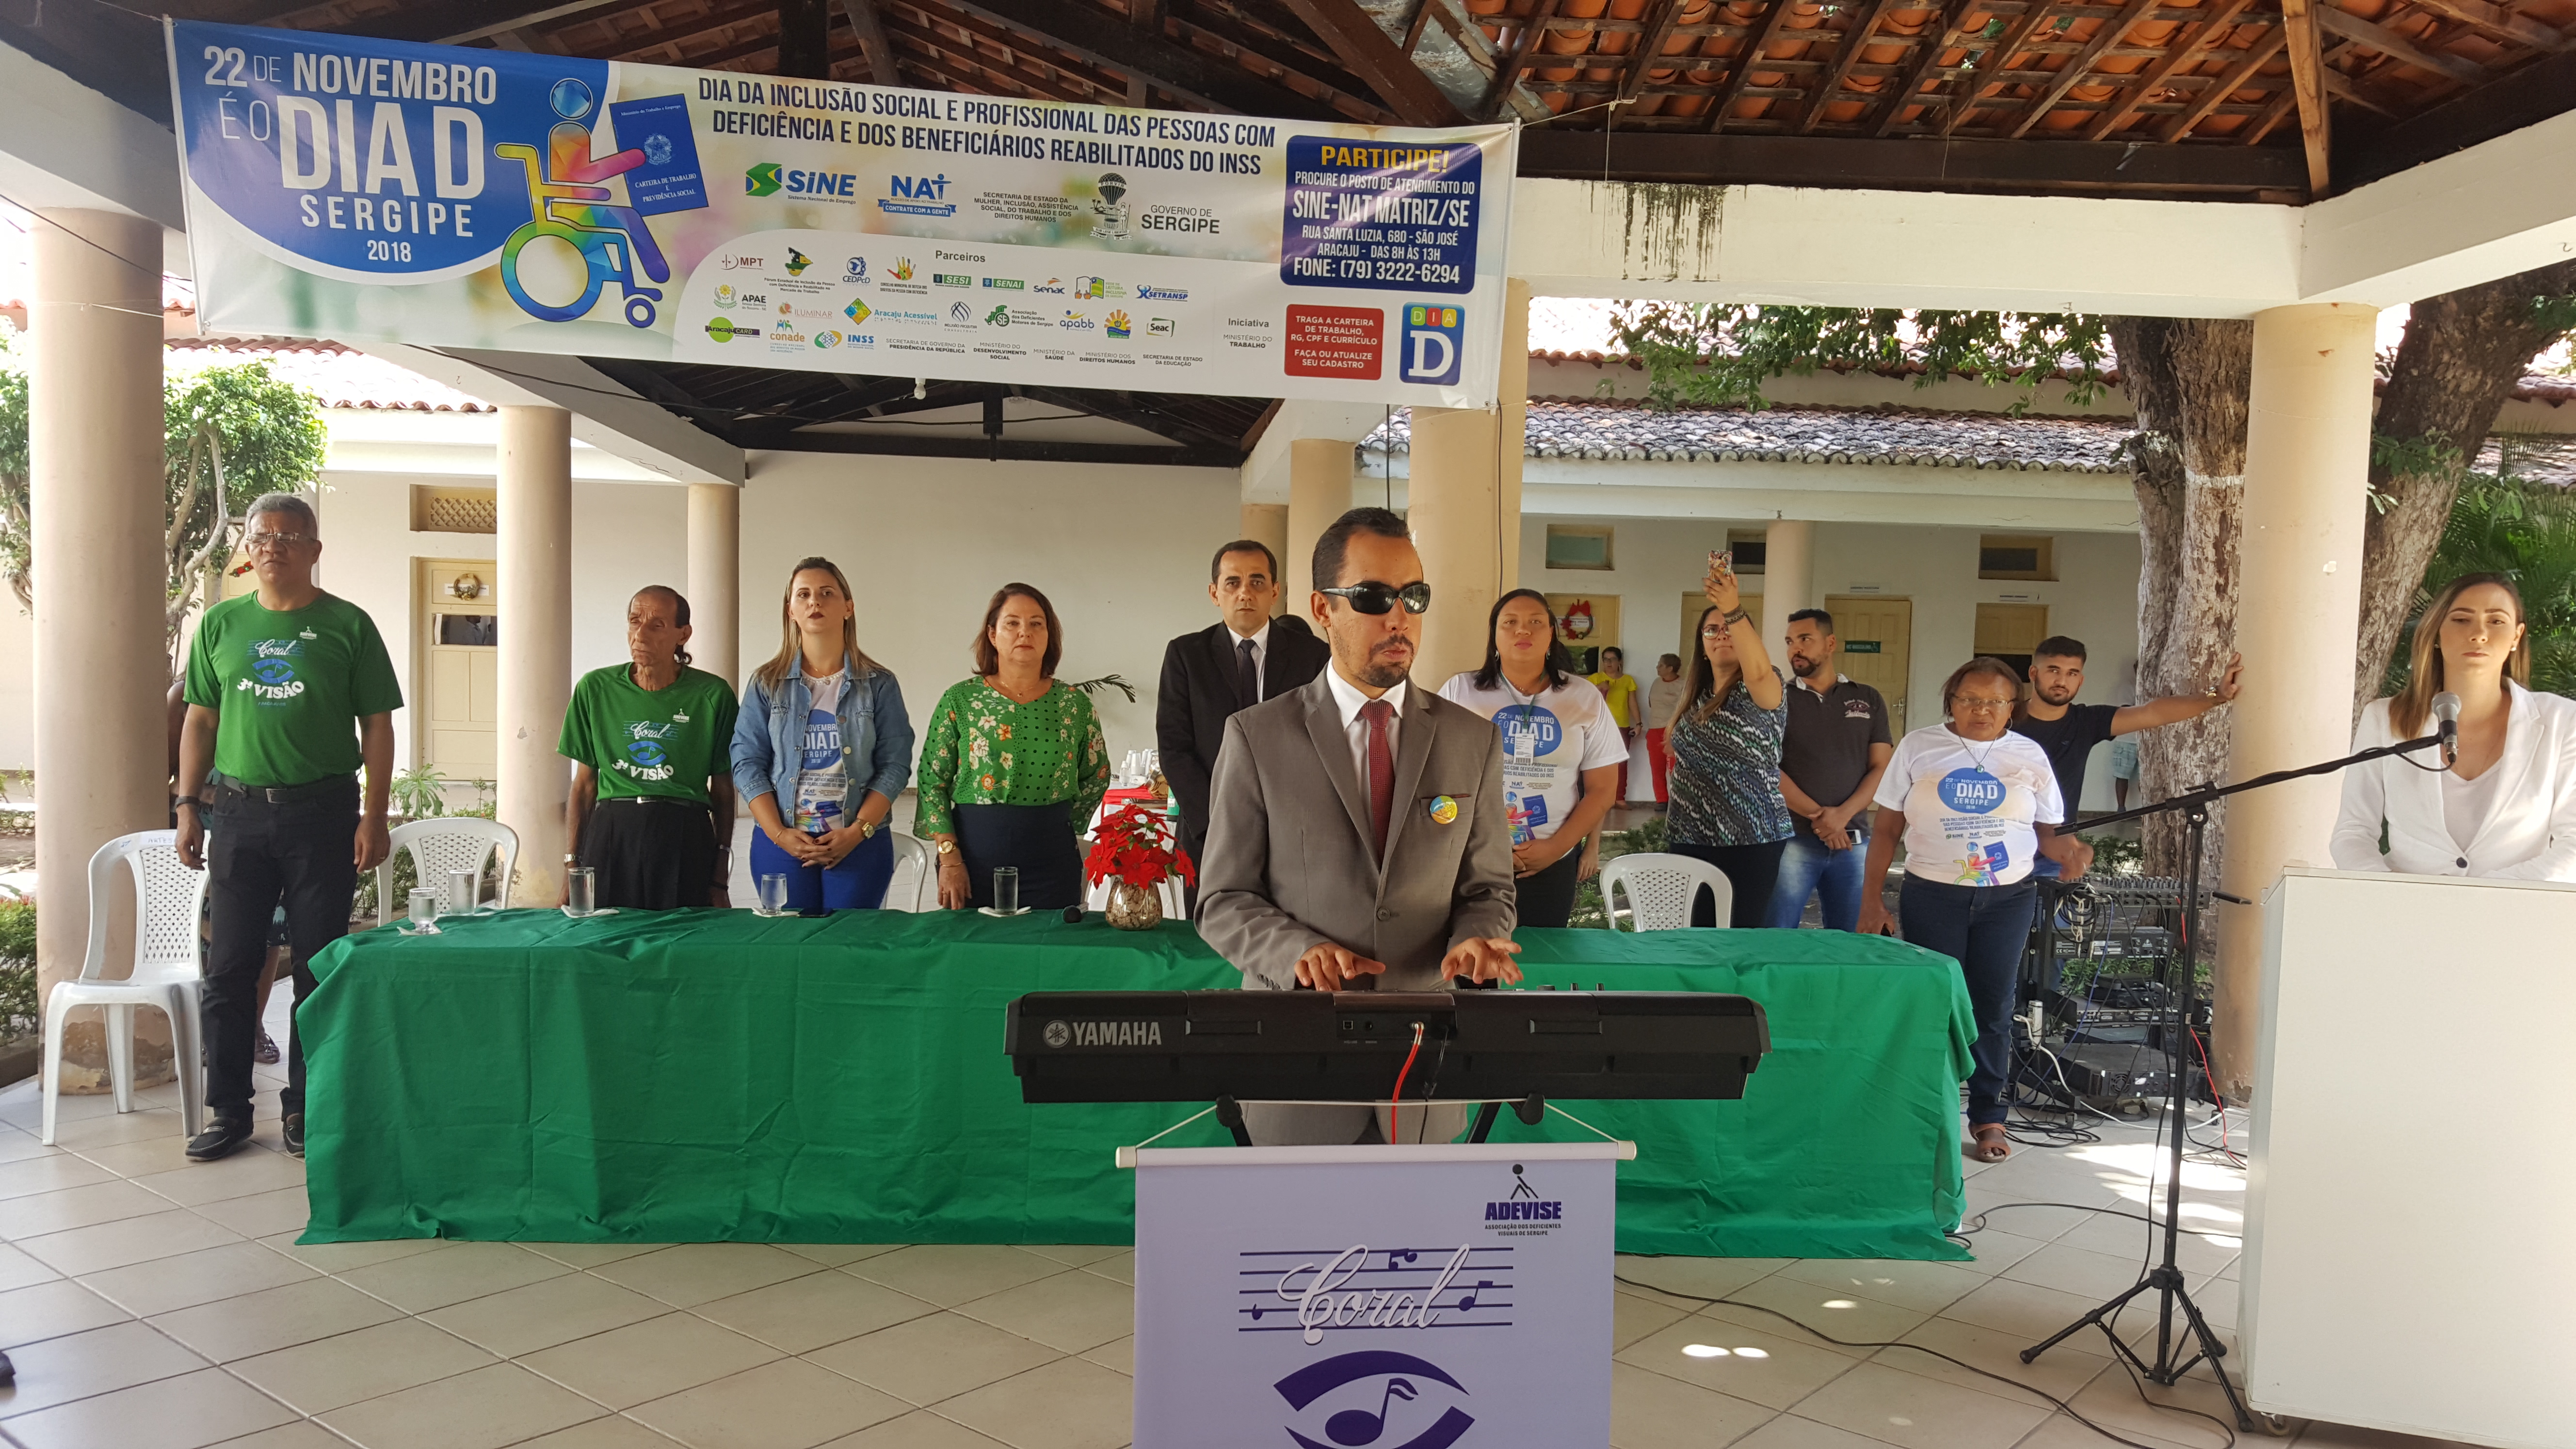 #PraTodoMundoVer: O vereador Lucas Aribé está tocando teclado no evento do Dia D Sergipe